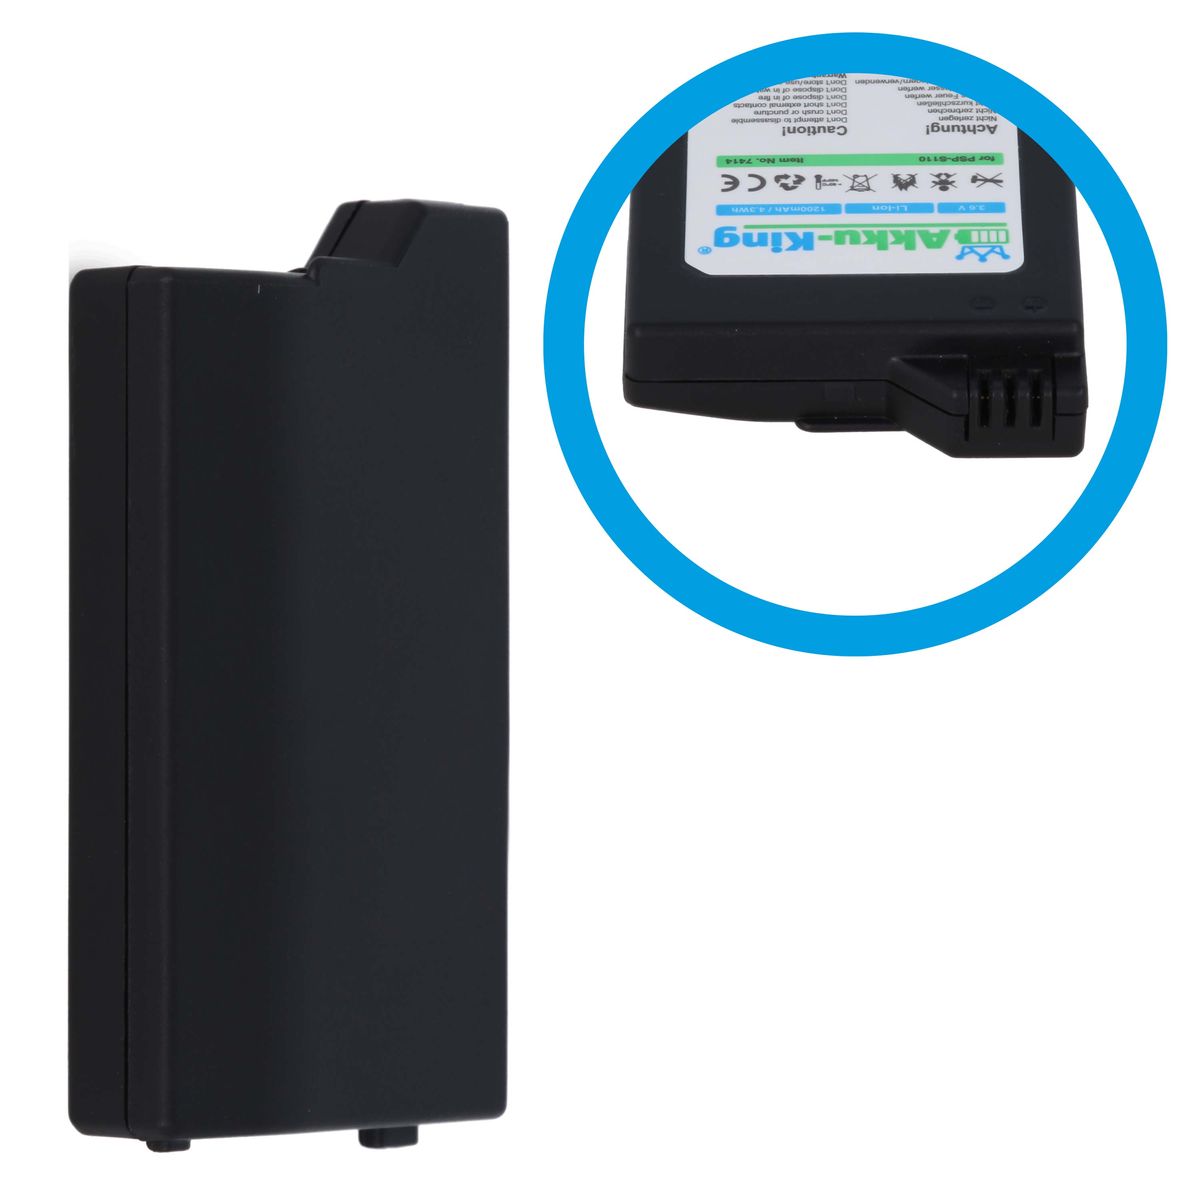 Batería PSP-S110 para Sony PSP Brite / PSP Slim & Lite